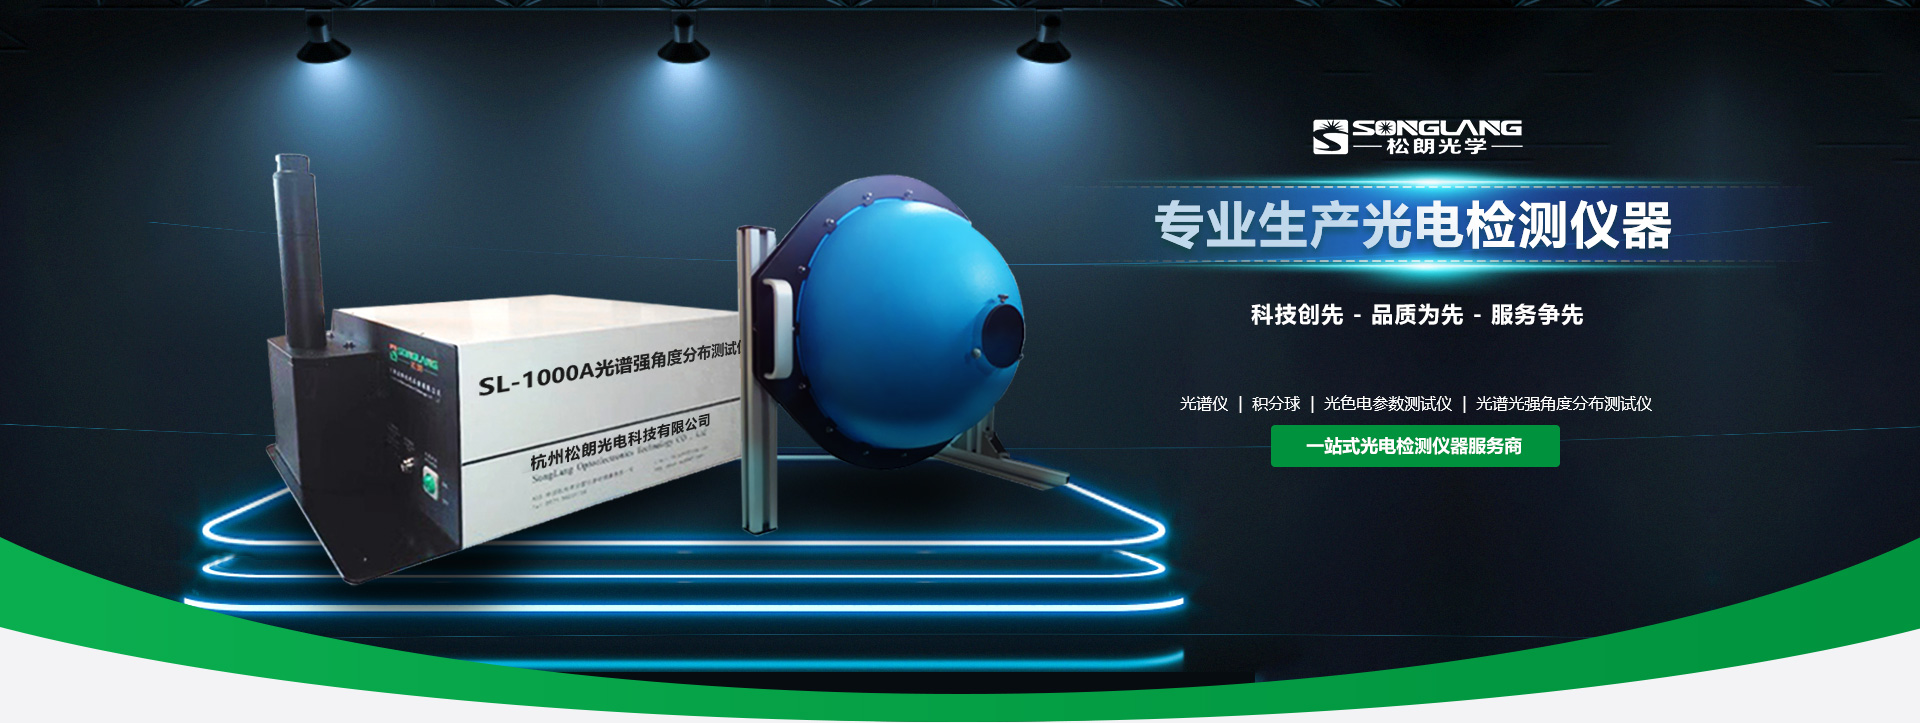 杭州松朗光电主营光谱仪,积分球,照度计等仪器设备.